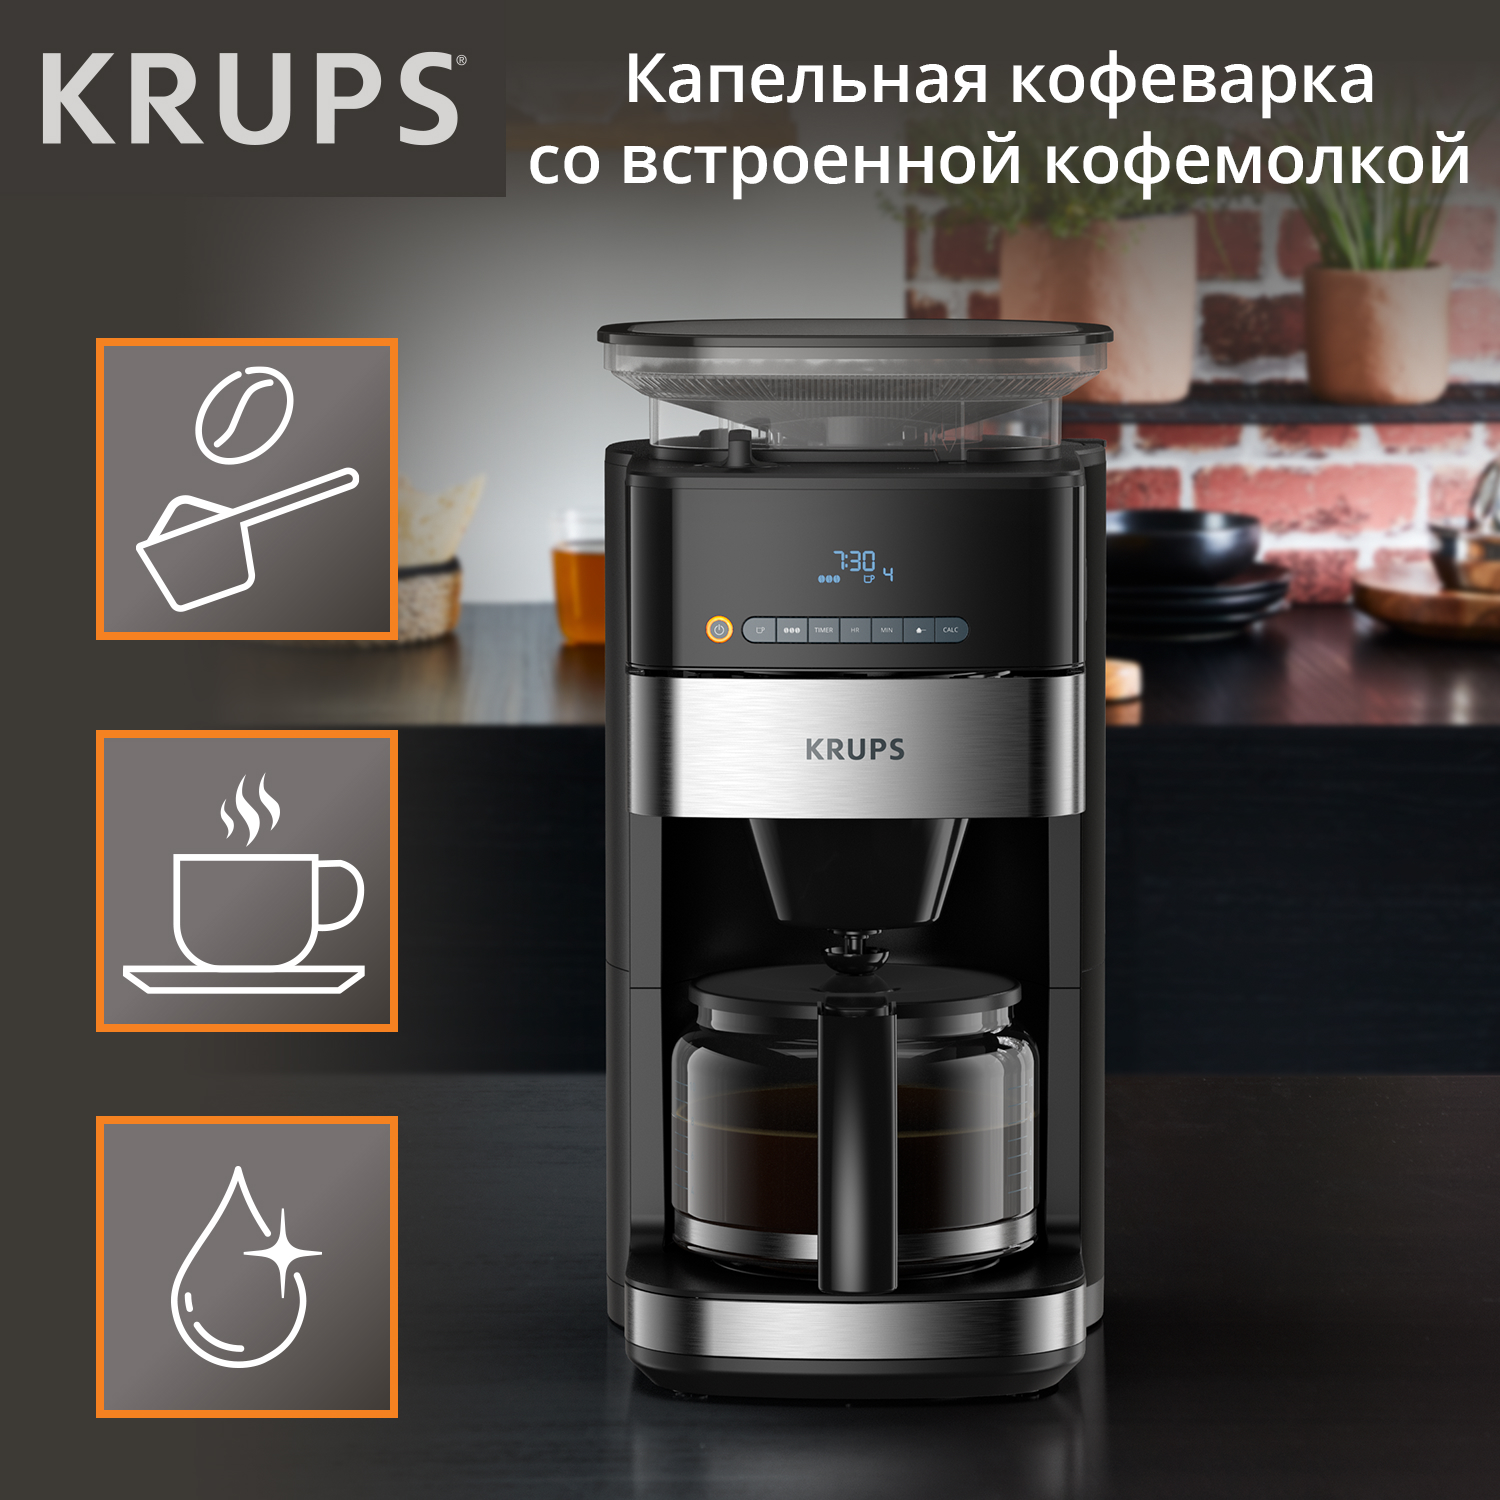 Кофеварка капельного типа Krups Grind Aroma KM832810 с кофемолкой, черный/серебристый капельная кофеварка со встроенной кофемолкой bq cm7002 розовое золото